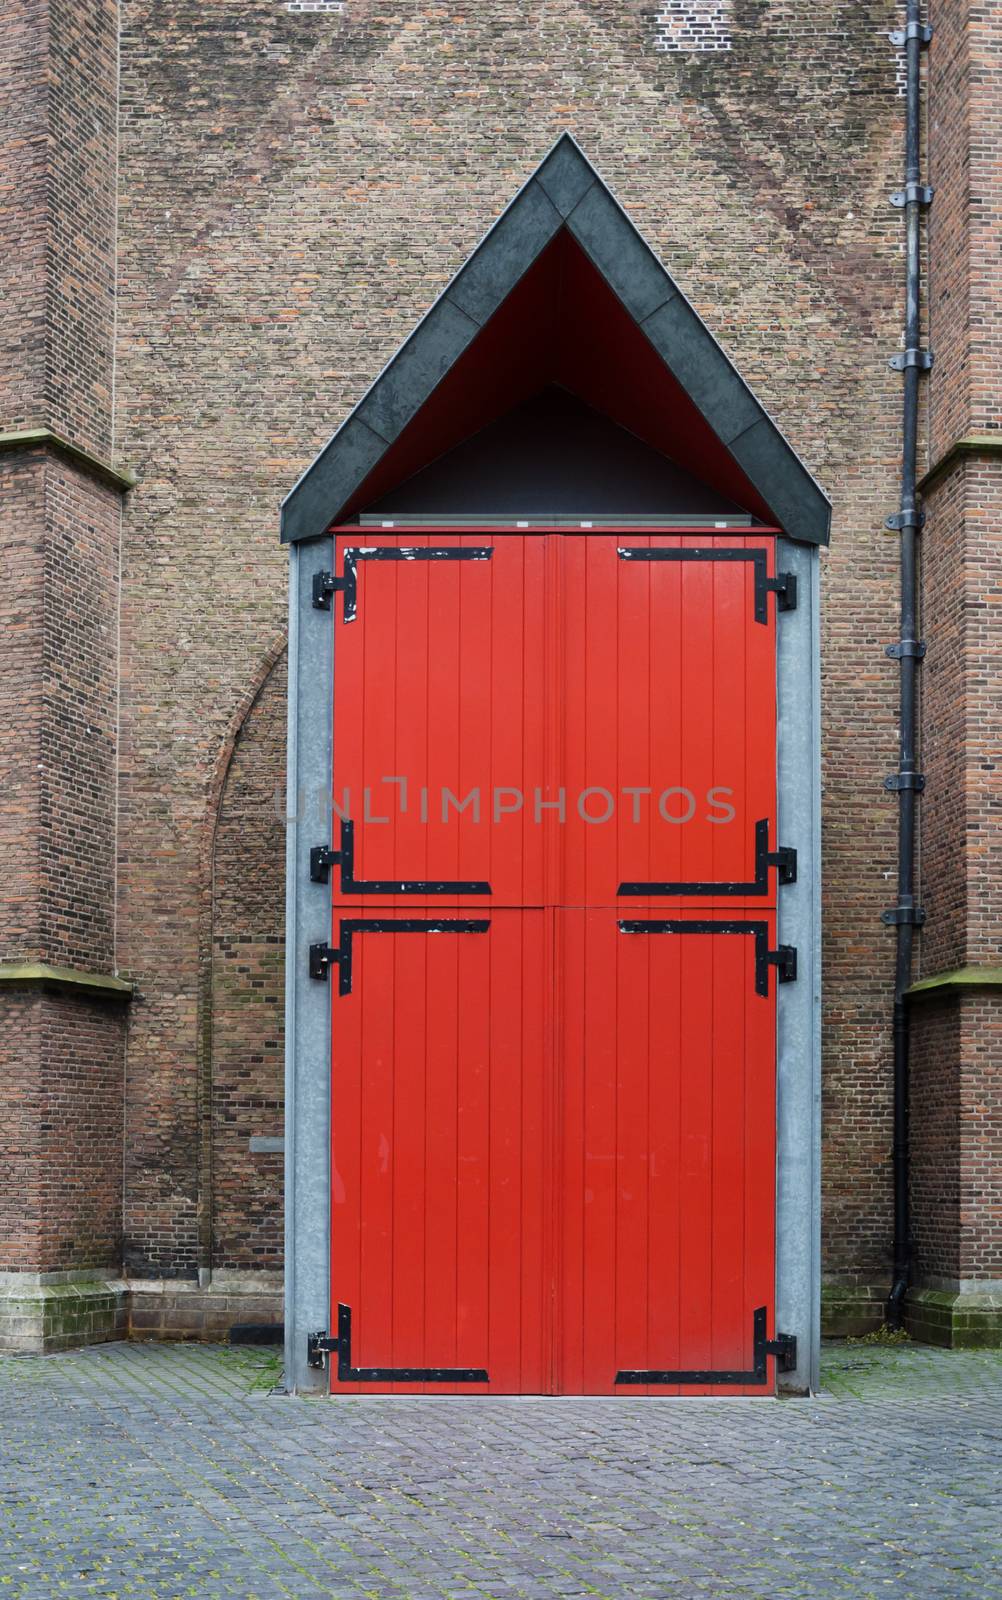 Red Door of Grote kerk (Big Church) in The Hague, Netherlands.